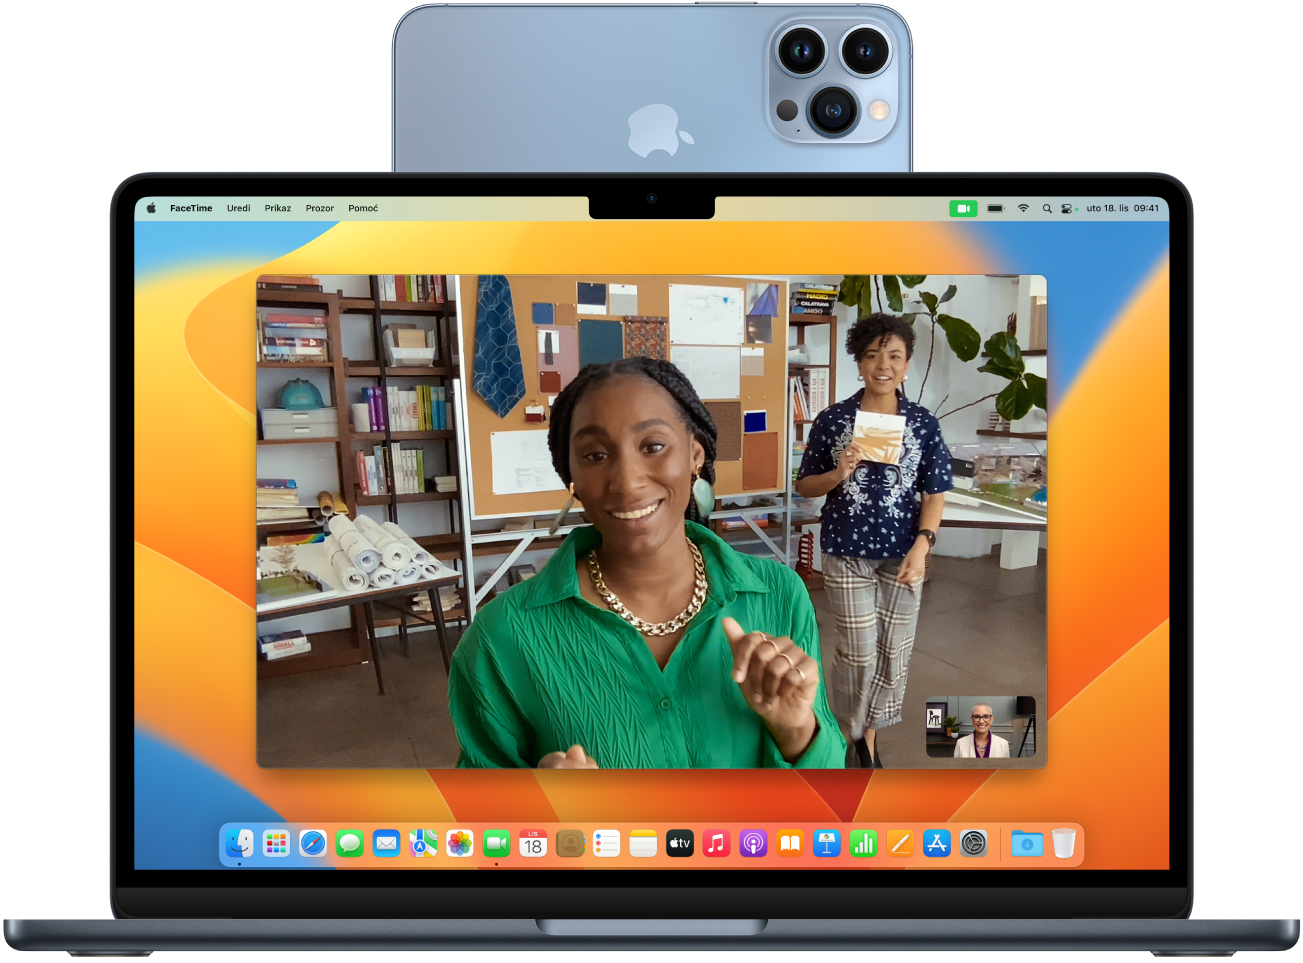 Mac i iPhone koji se koristi kao web kamera i pričvršćen je na vrh zaslona. Slika s kamere iPhonea vidljiva je na zaslonu Maca.